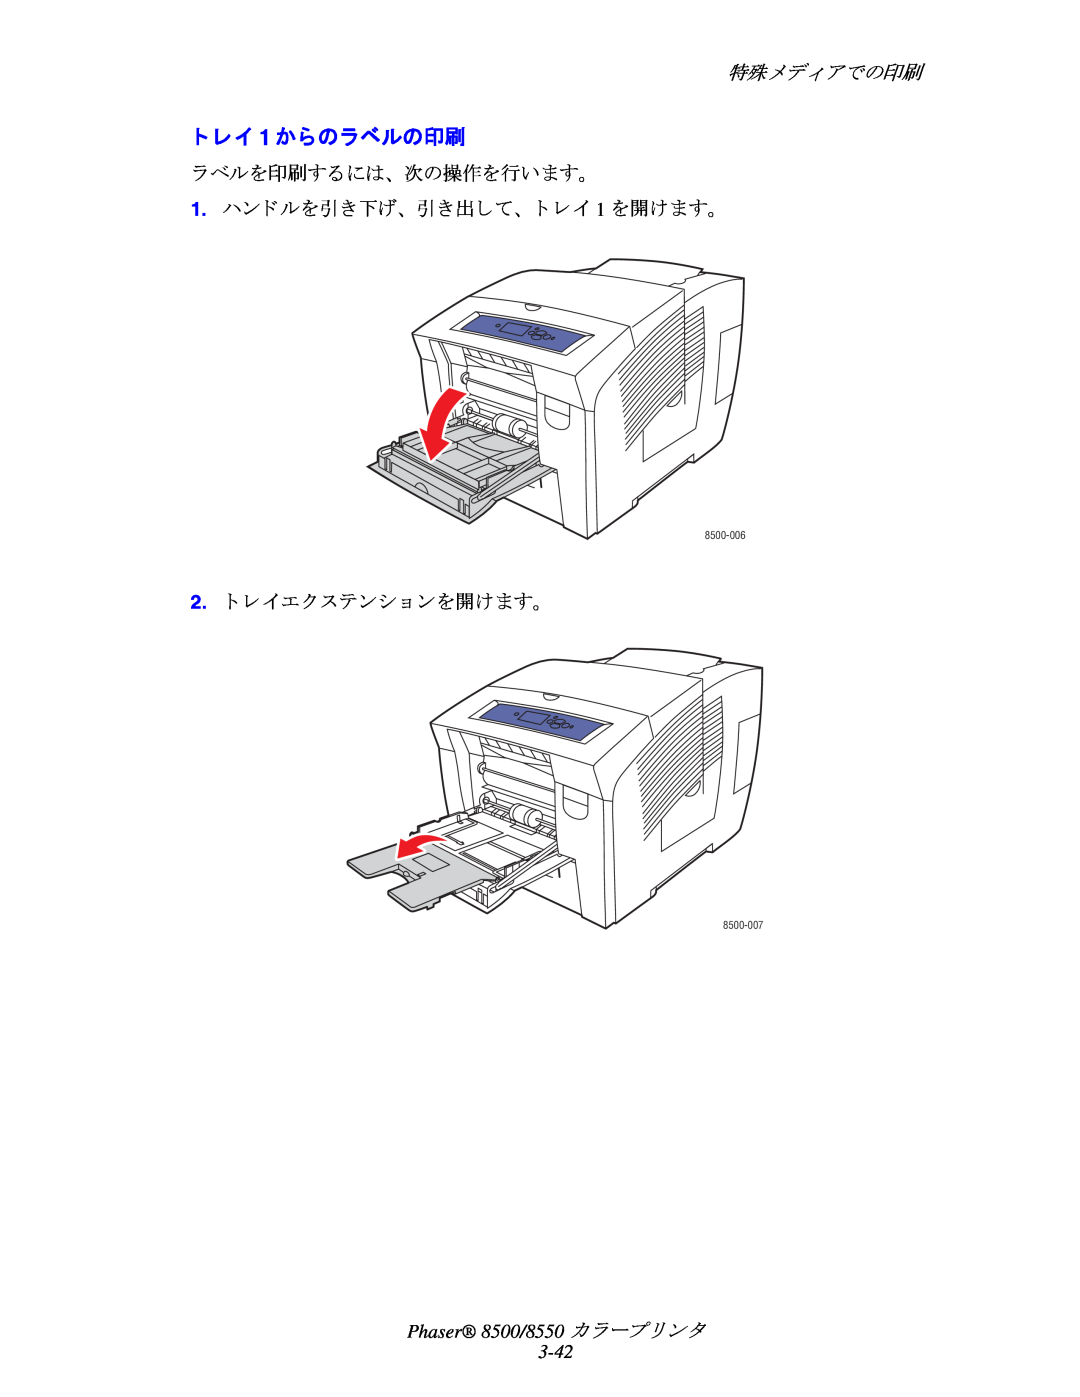 Xerox manual ト レイ 1 からのラベルの印刷, 特殊メデ ィ アでの印刷, Phaser 8500/8550 カ ラープ リ ン タ 3-42, 8500-006, 8500-007 